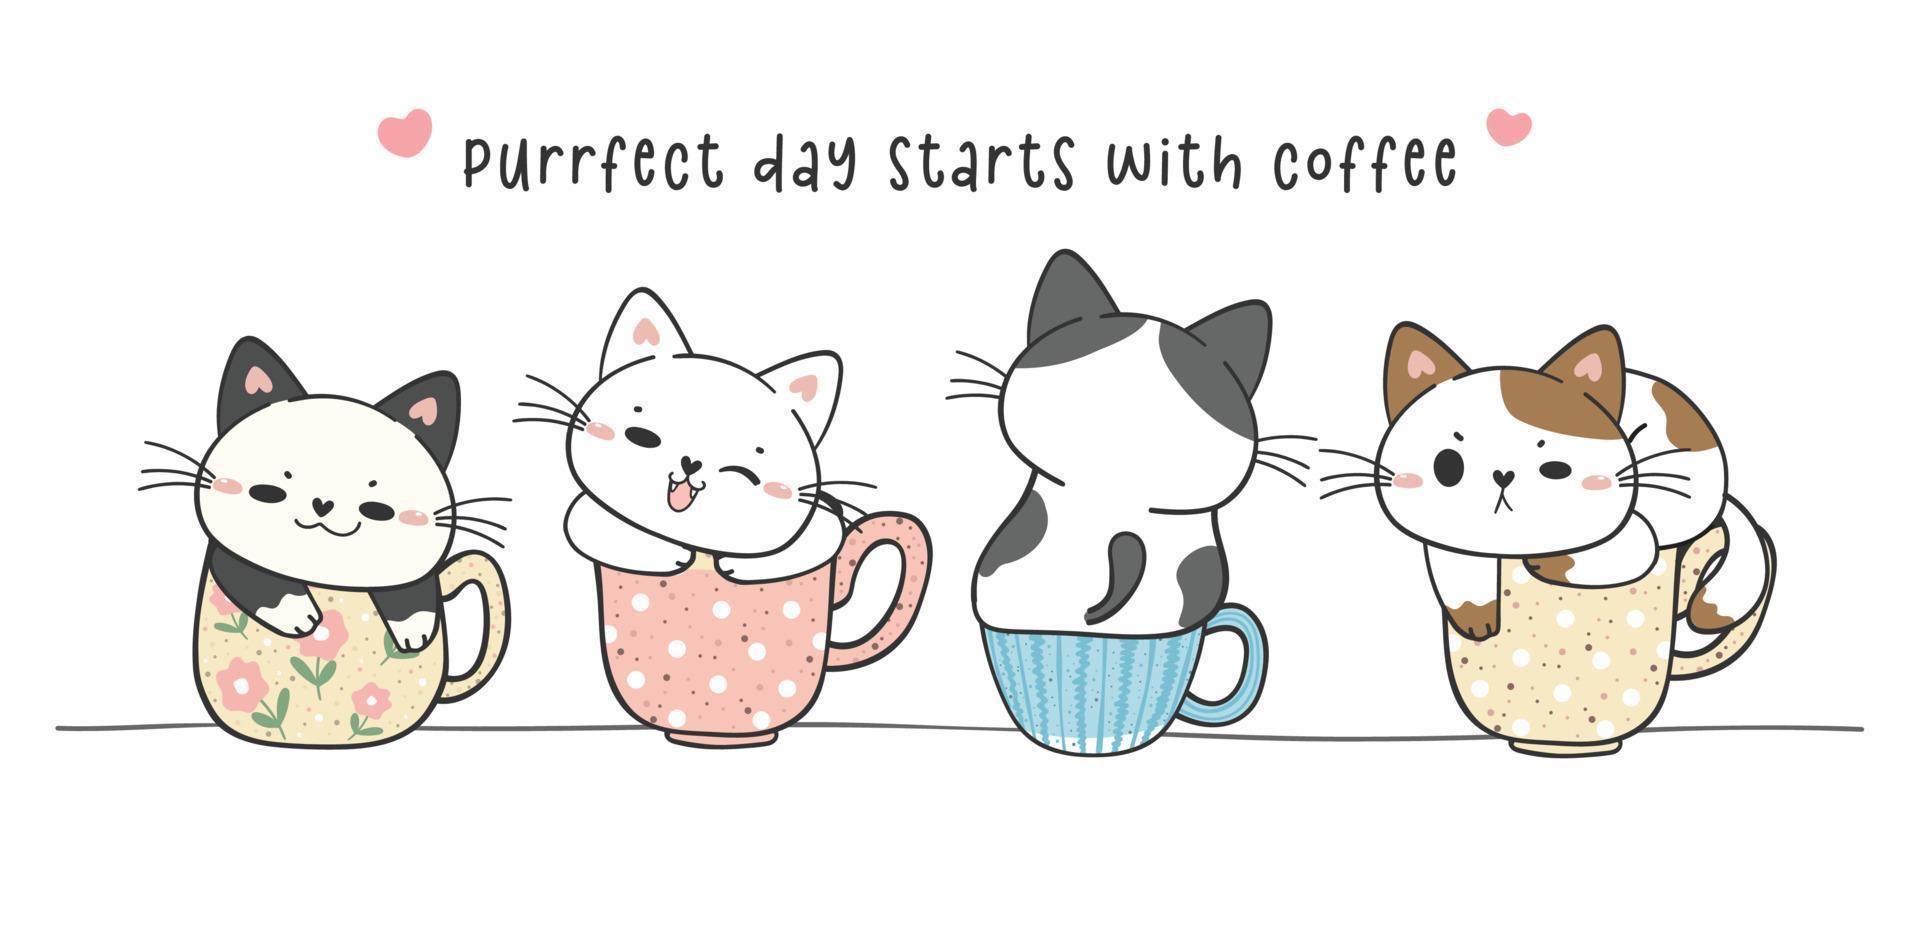 groep leuke grappige katjeskatten die op de collectie van de koffiekopmok zitten, perfecte dag met koffie, schattig dierlijk huisdier hand tekenen doodle vector